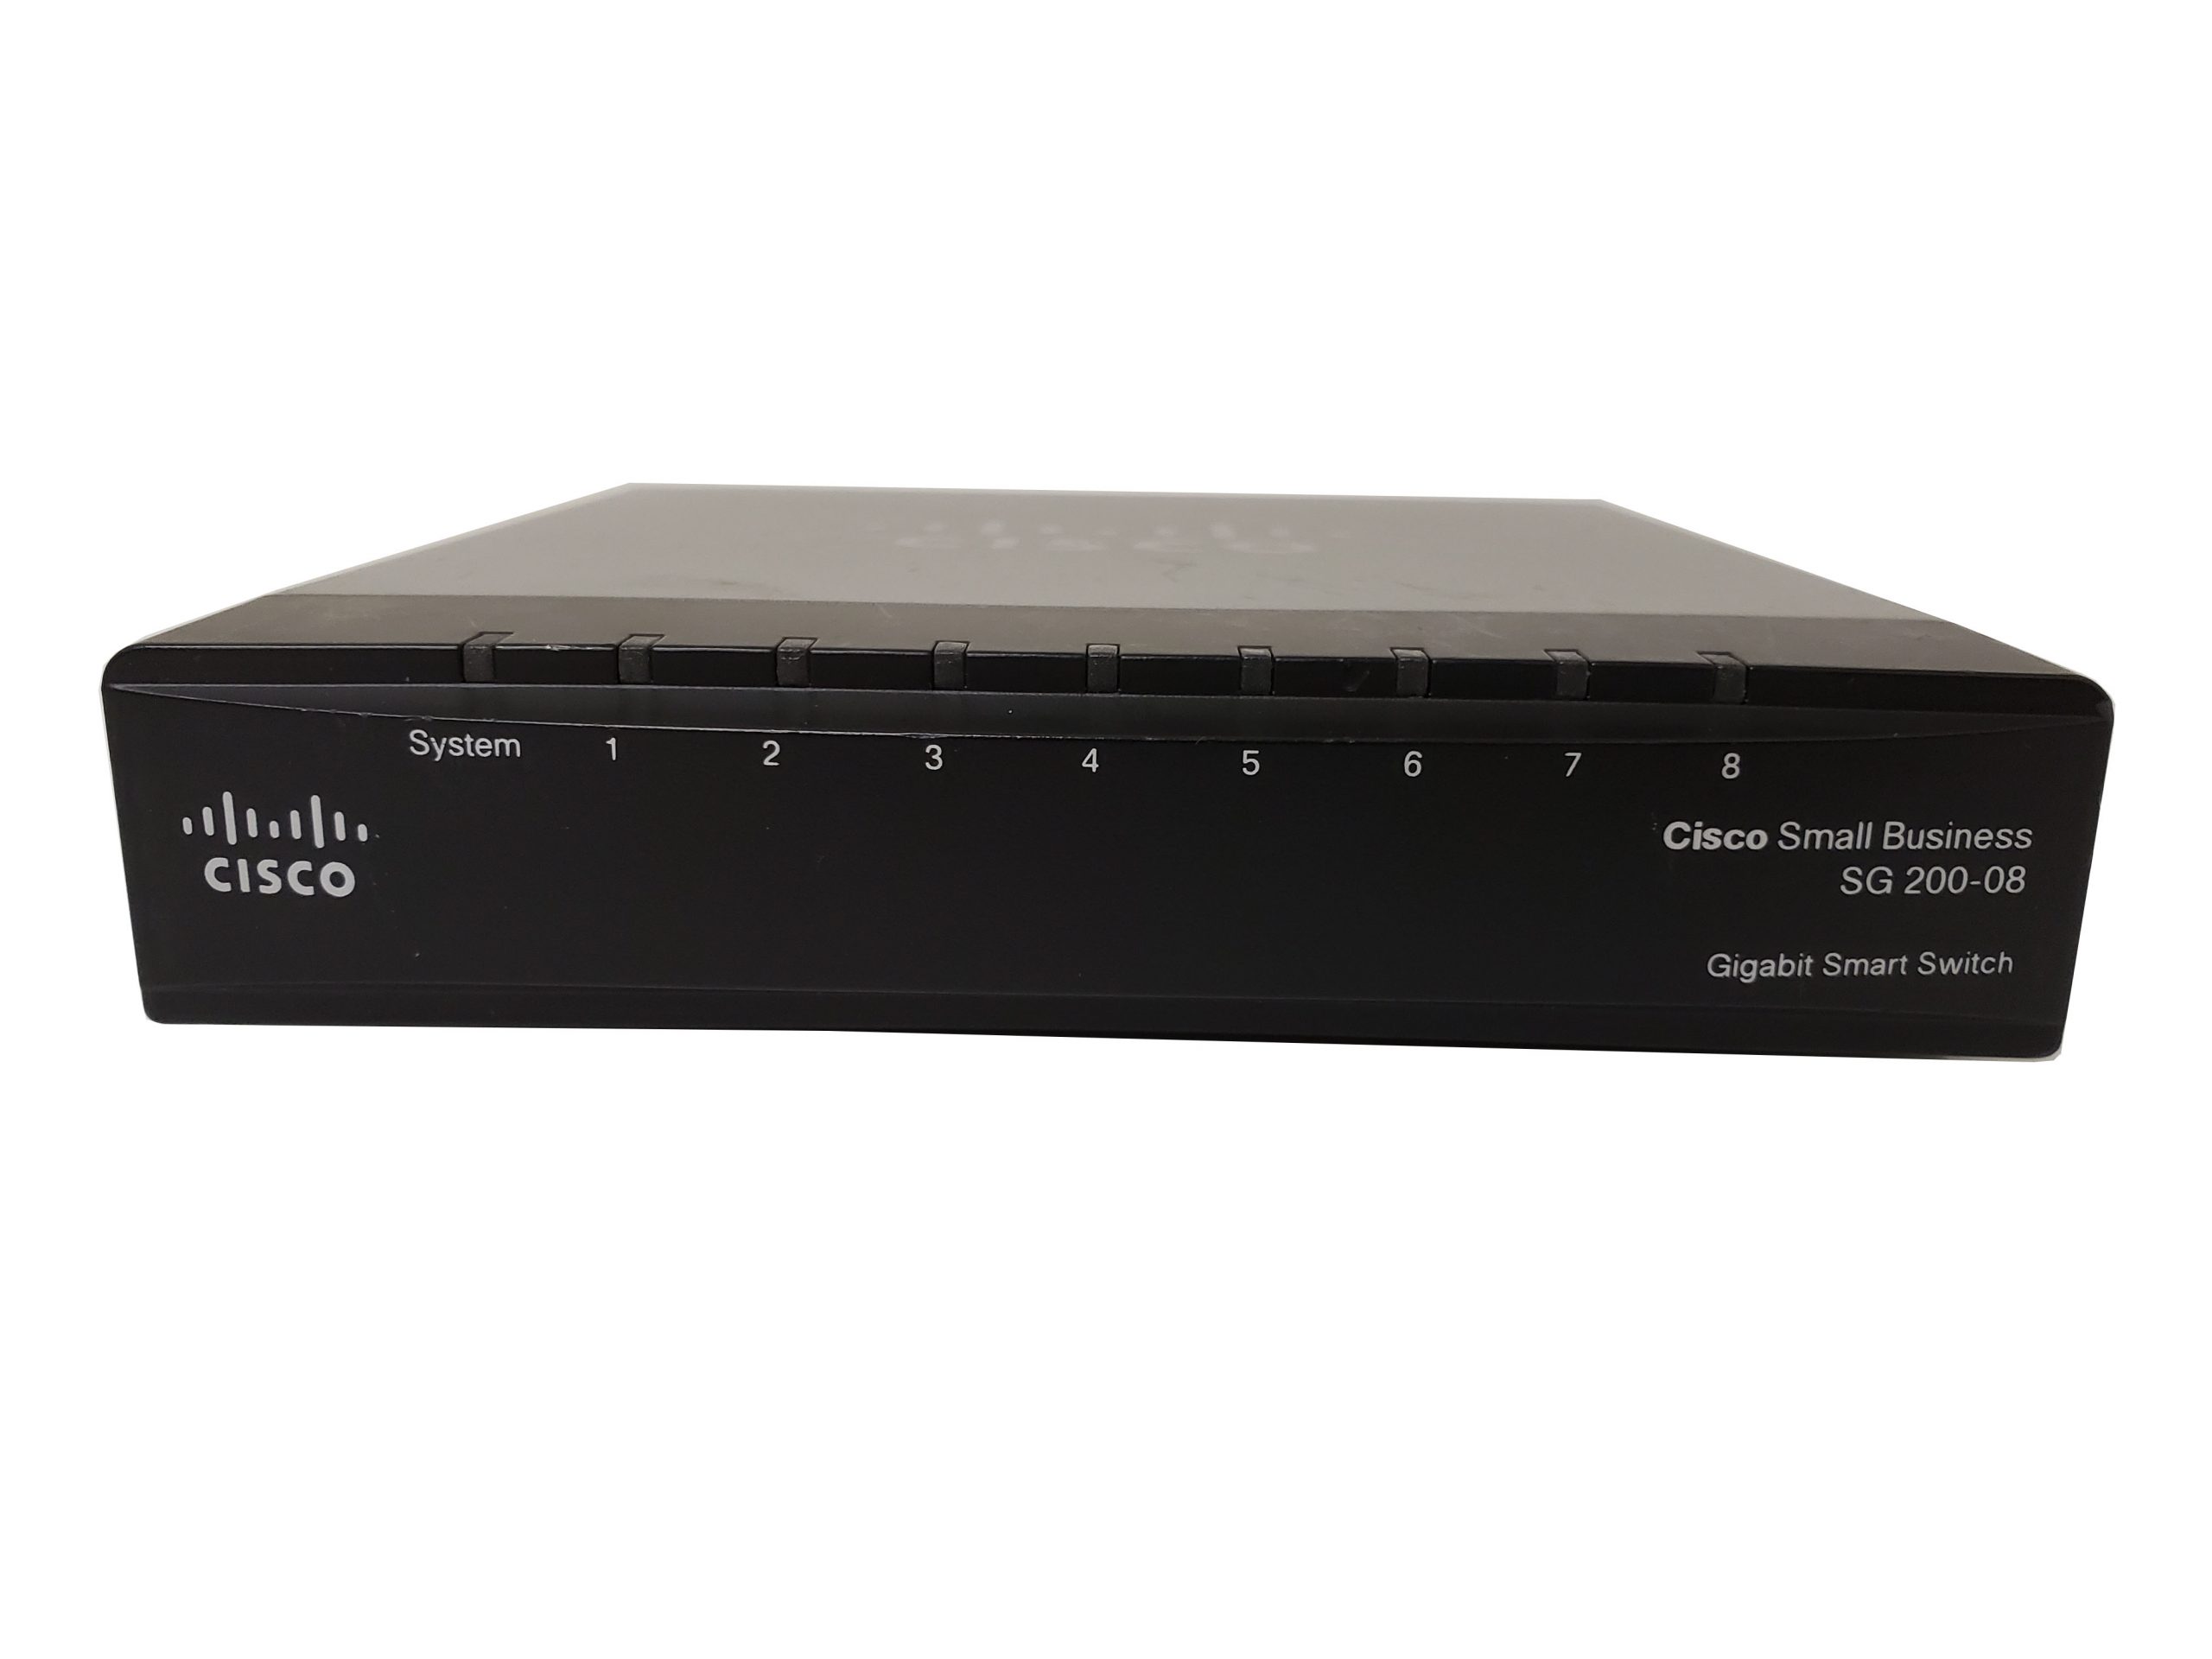 Best Deal: Cisco Switch - Small Business SG 200-08 Gigabit Smart 